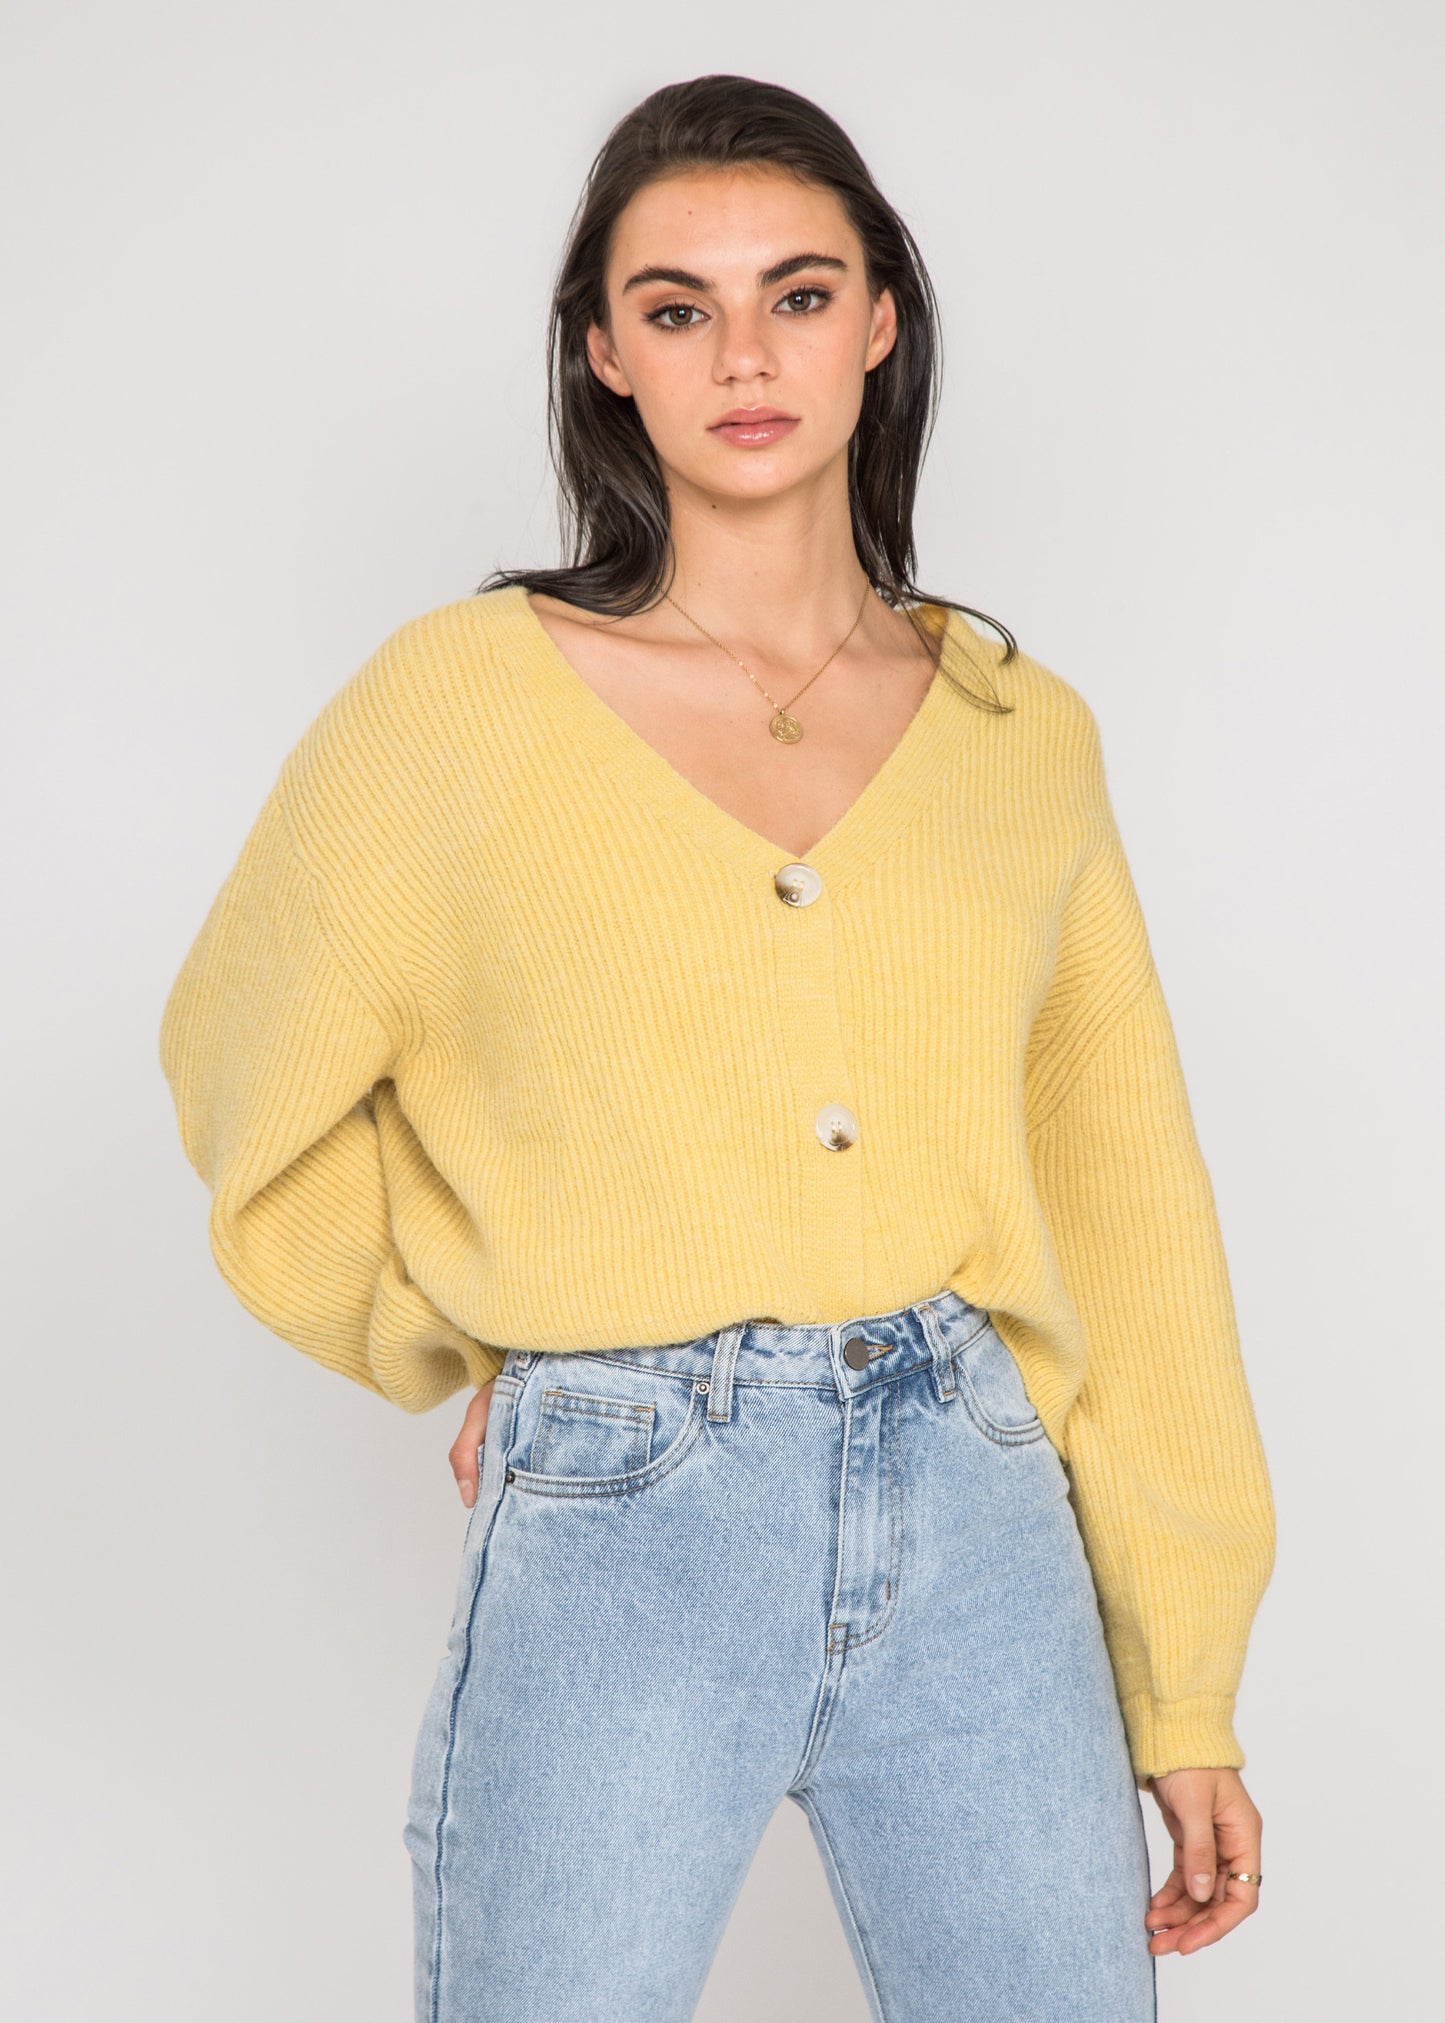 Chunky  knit cardigan in yellow